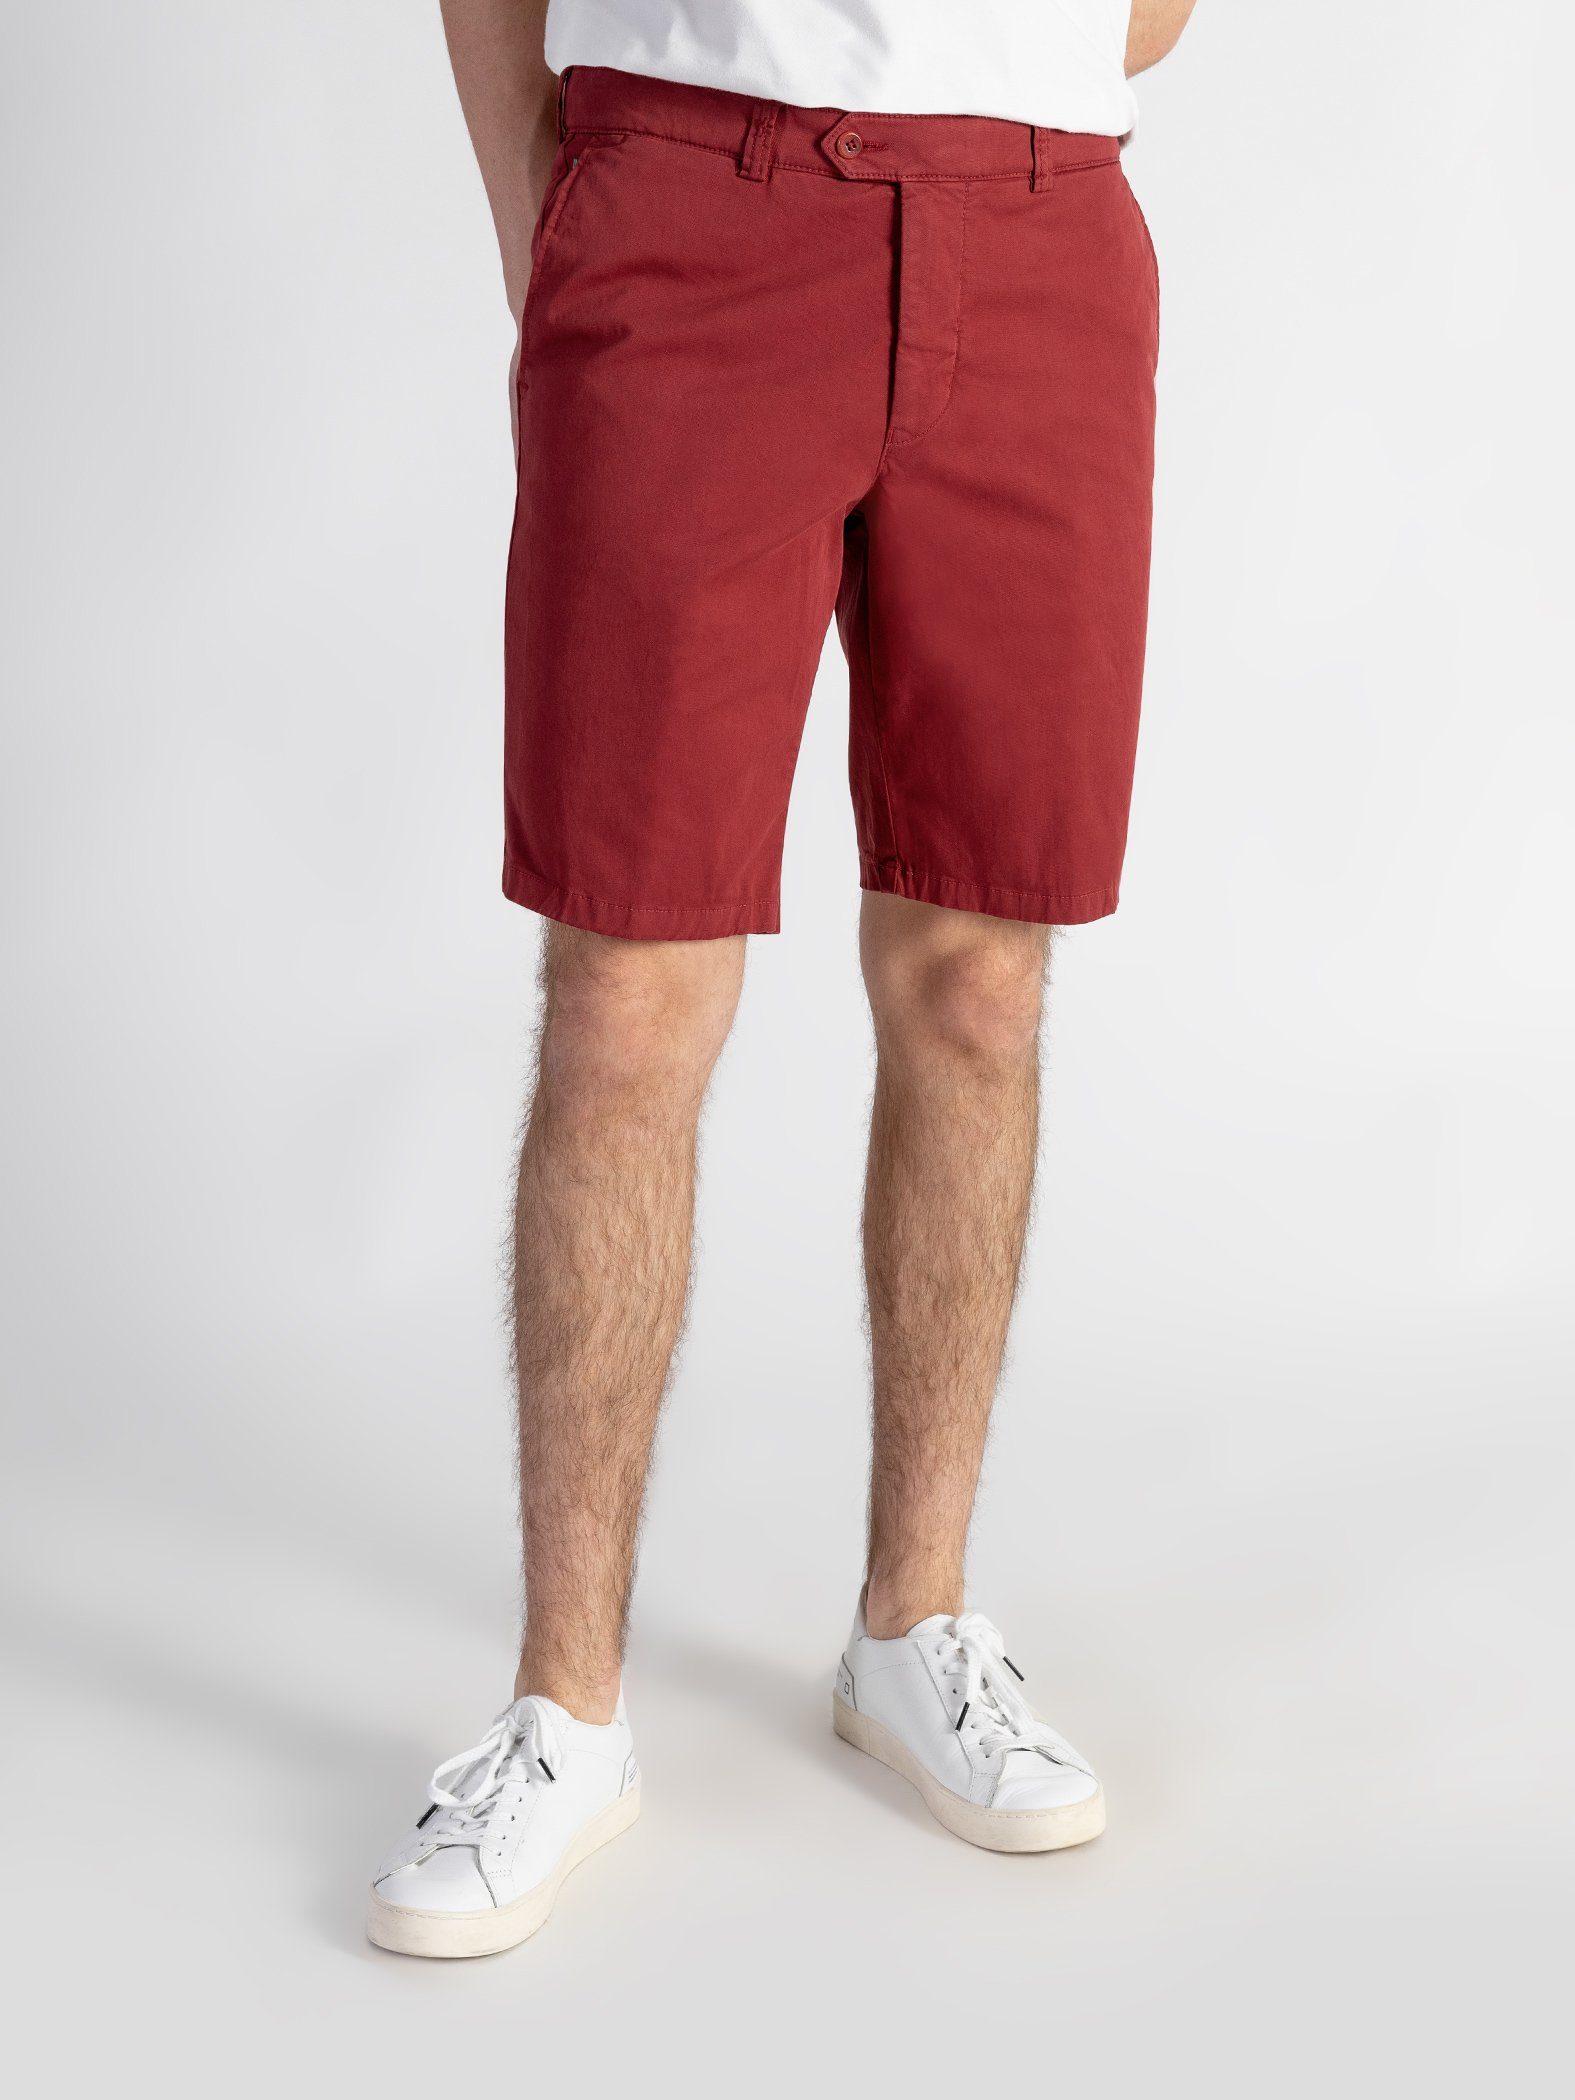 TwoMates Shorts Shorts mit elastischem Farbauswahl, GOTS-zertifiziert Bund, Rot